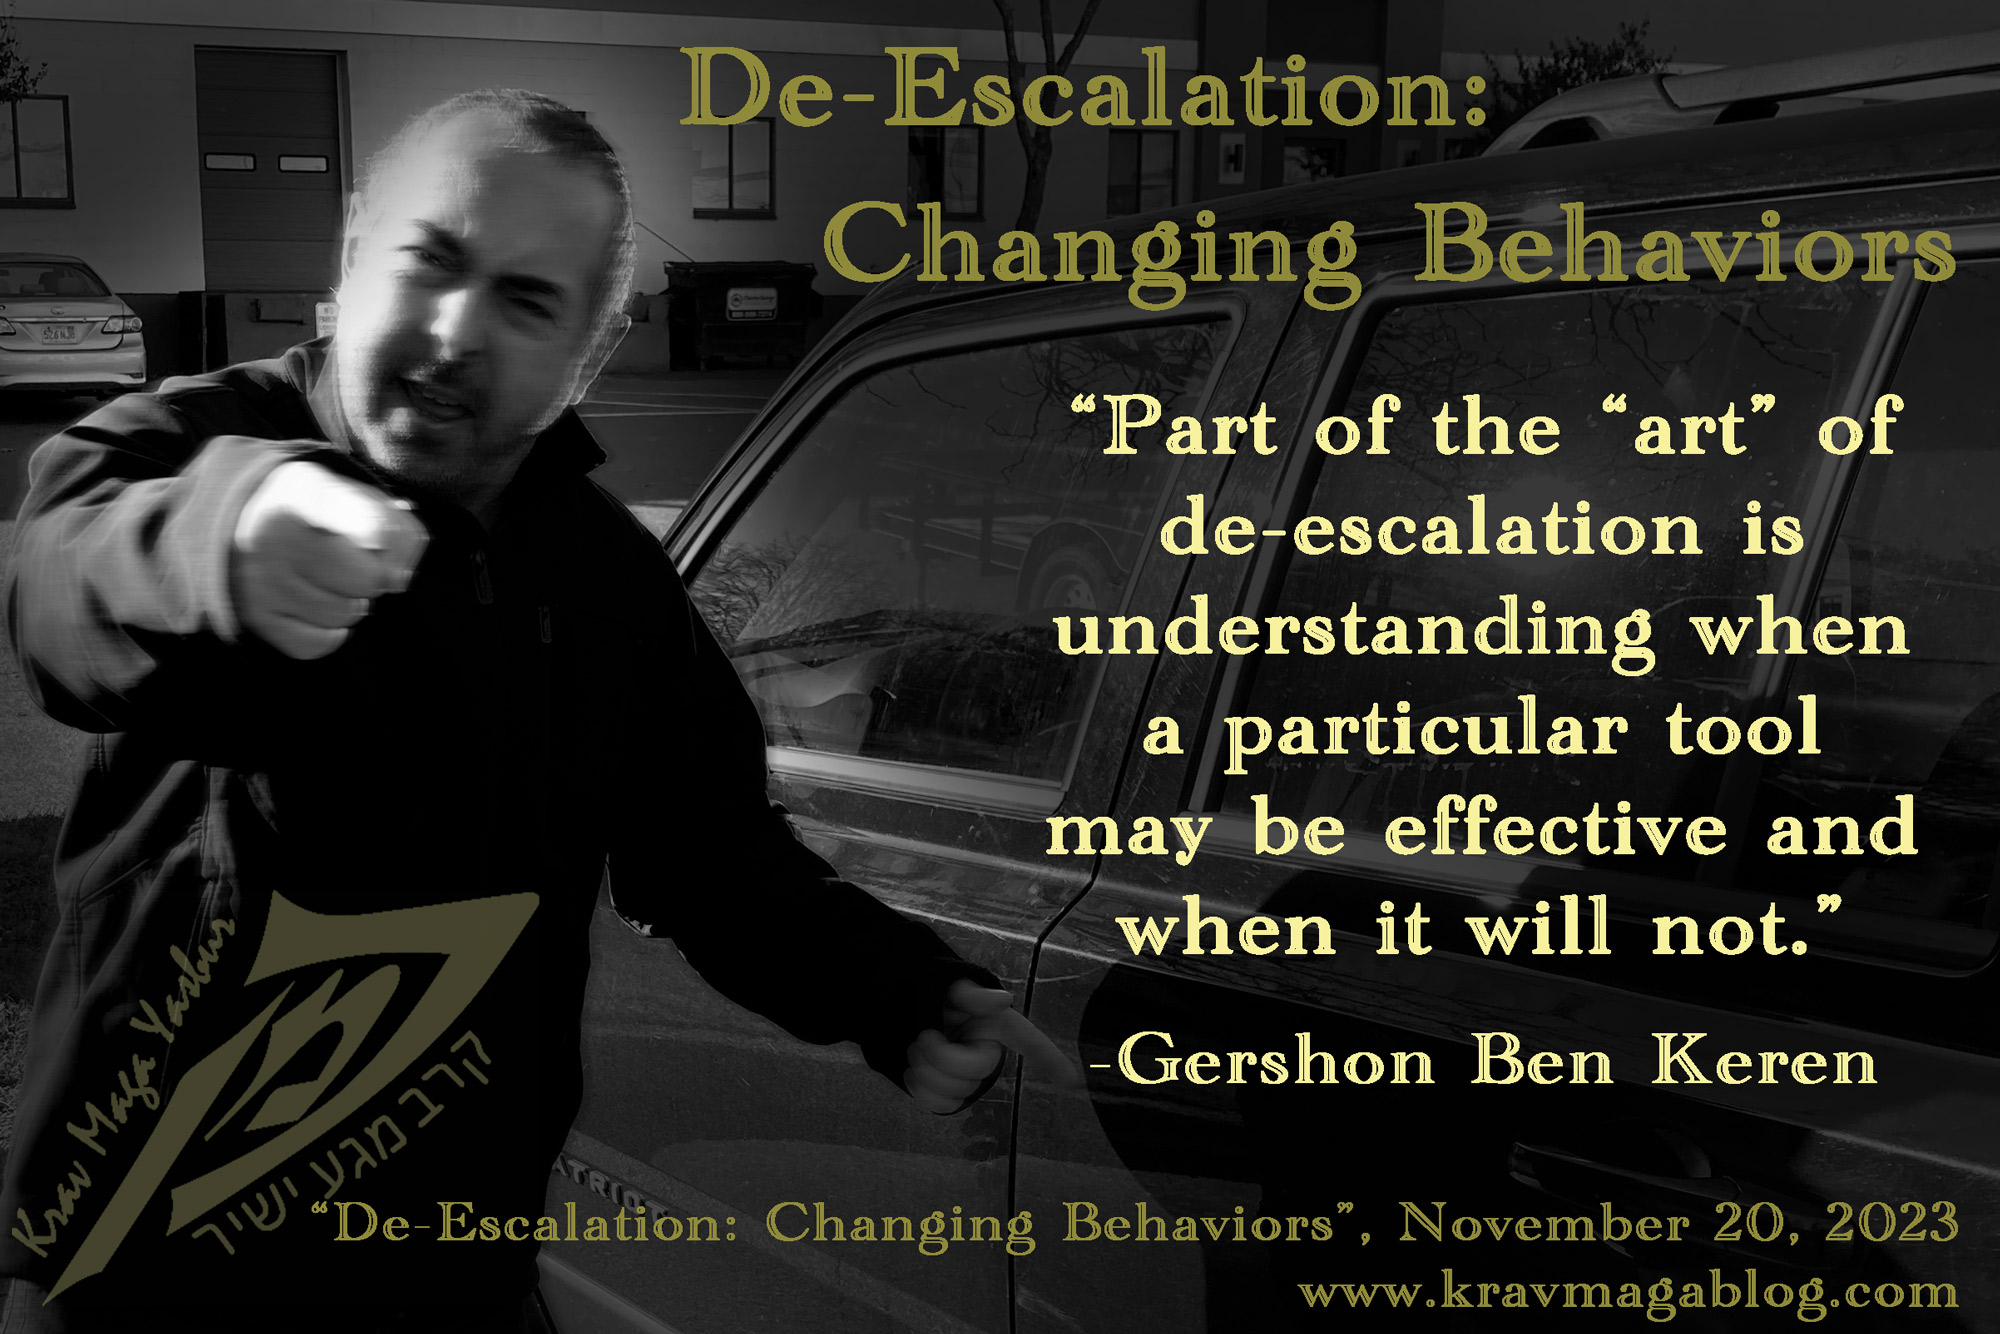 Blog About De-escalation & Changing Behaviors